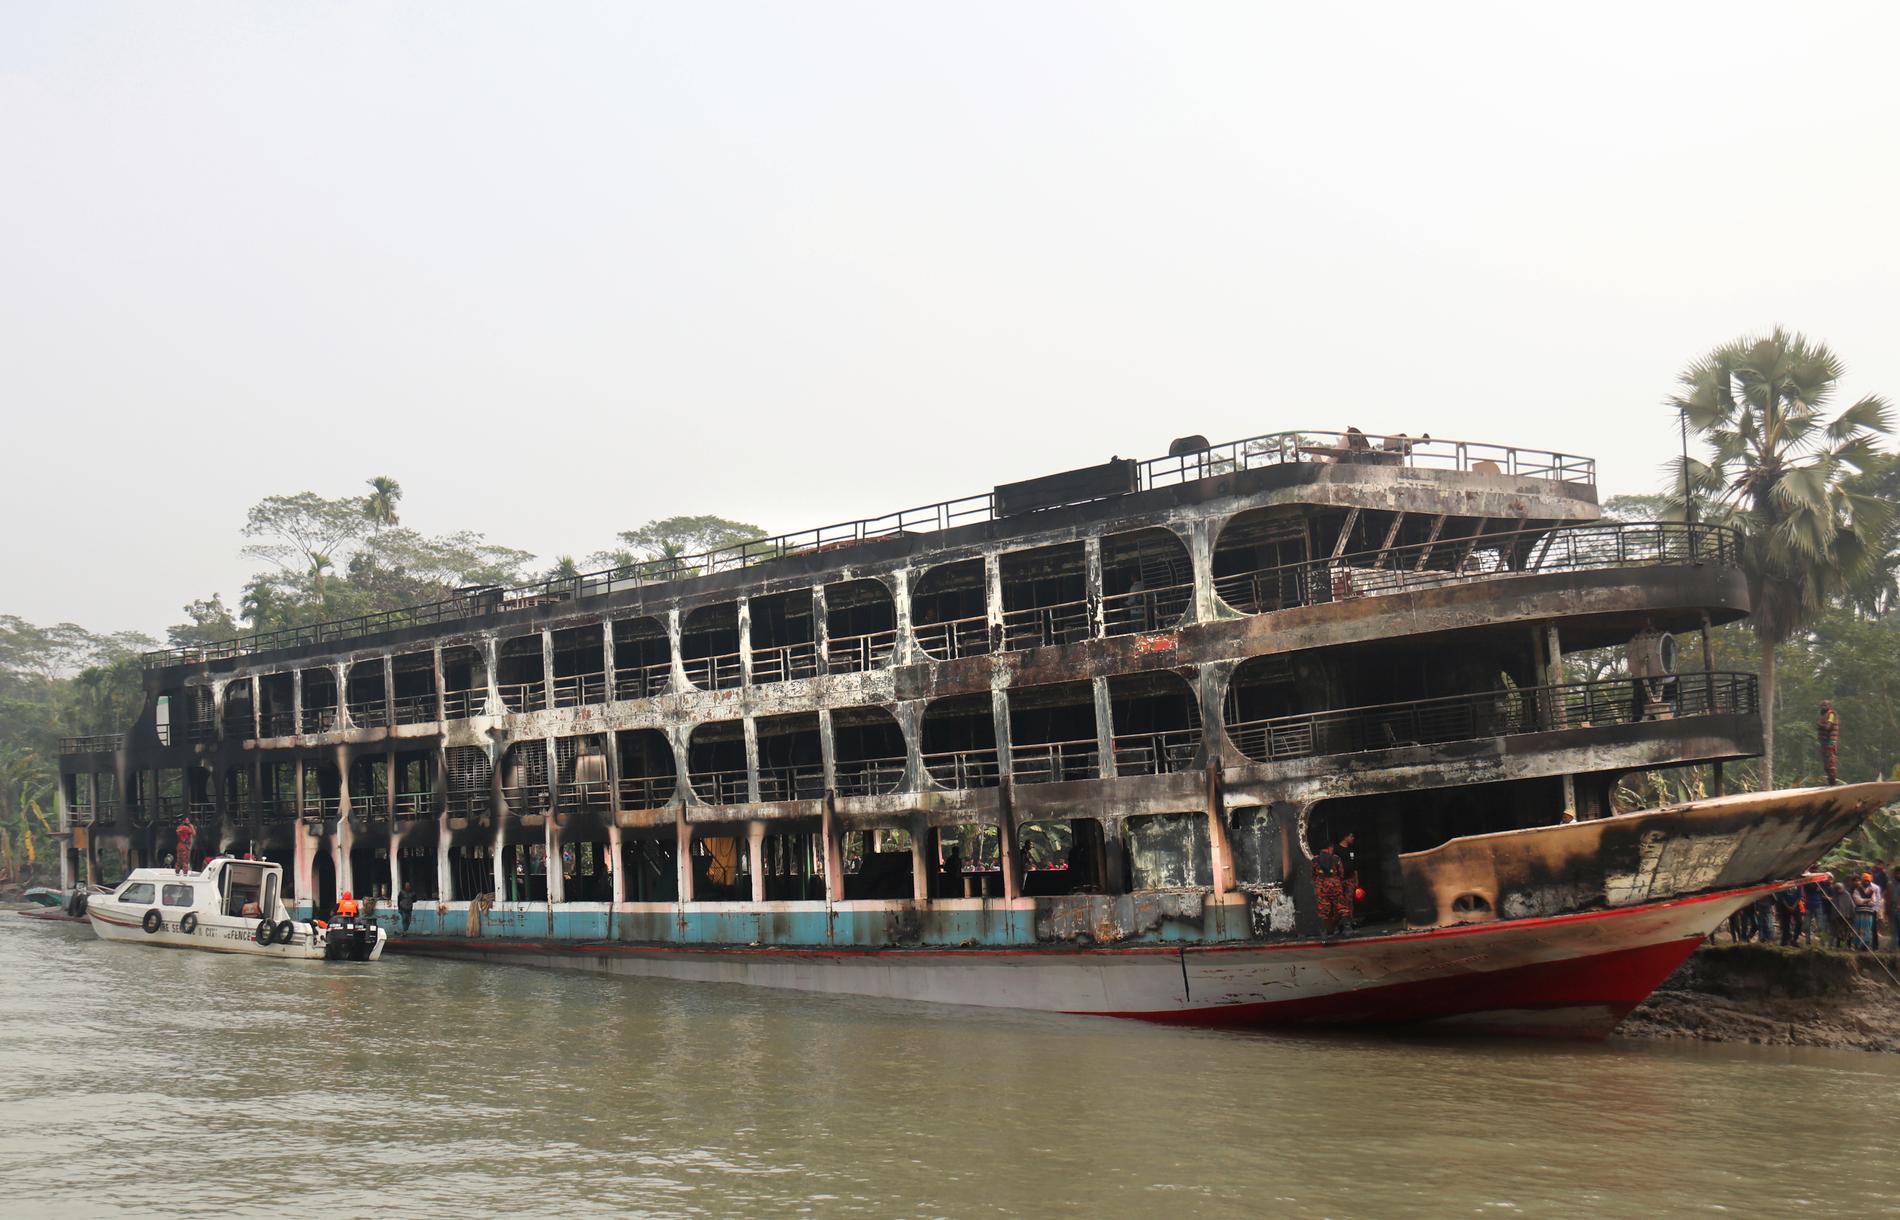 Färjan var på väg från Bangladesh huvudstad Dhaka när den började brinna. 800 passagerare fanns ombord och hittills har 39 rapporterats döda och över 70 skadats.